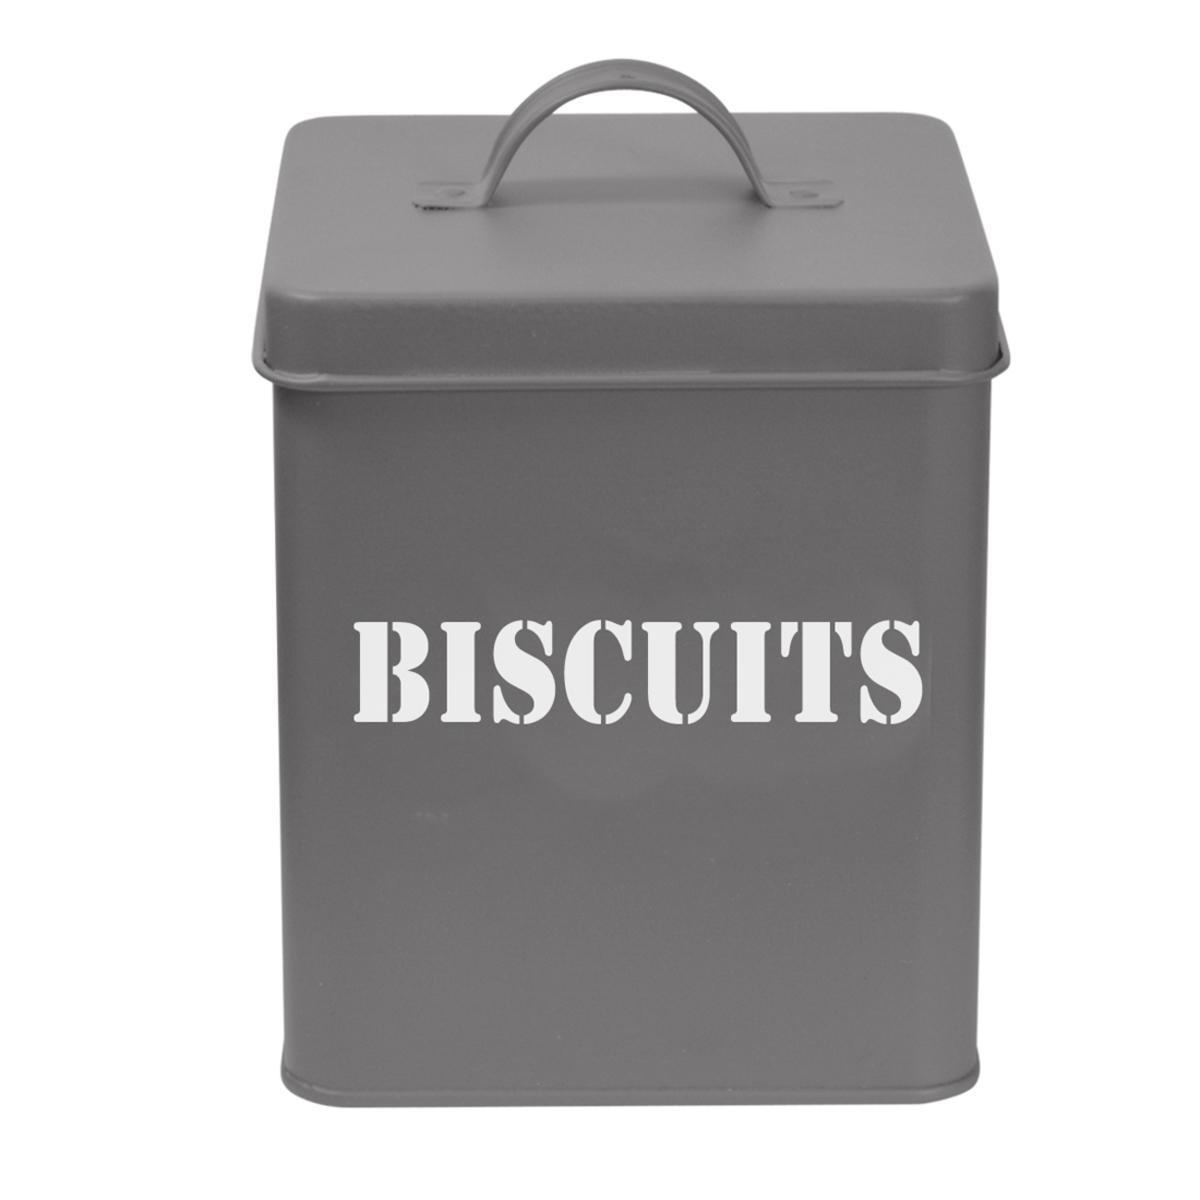 Boîte à biscuits - L 14.5 x H 19 x l 11.5 cm - Gris